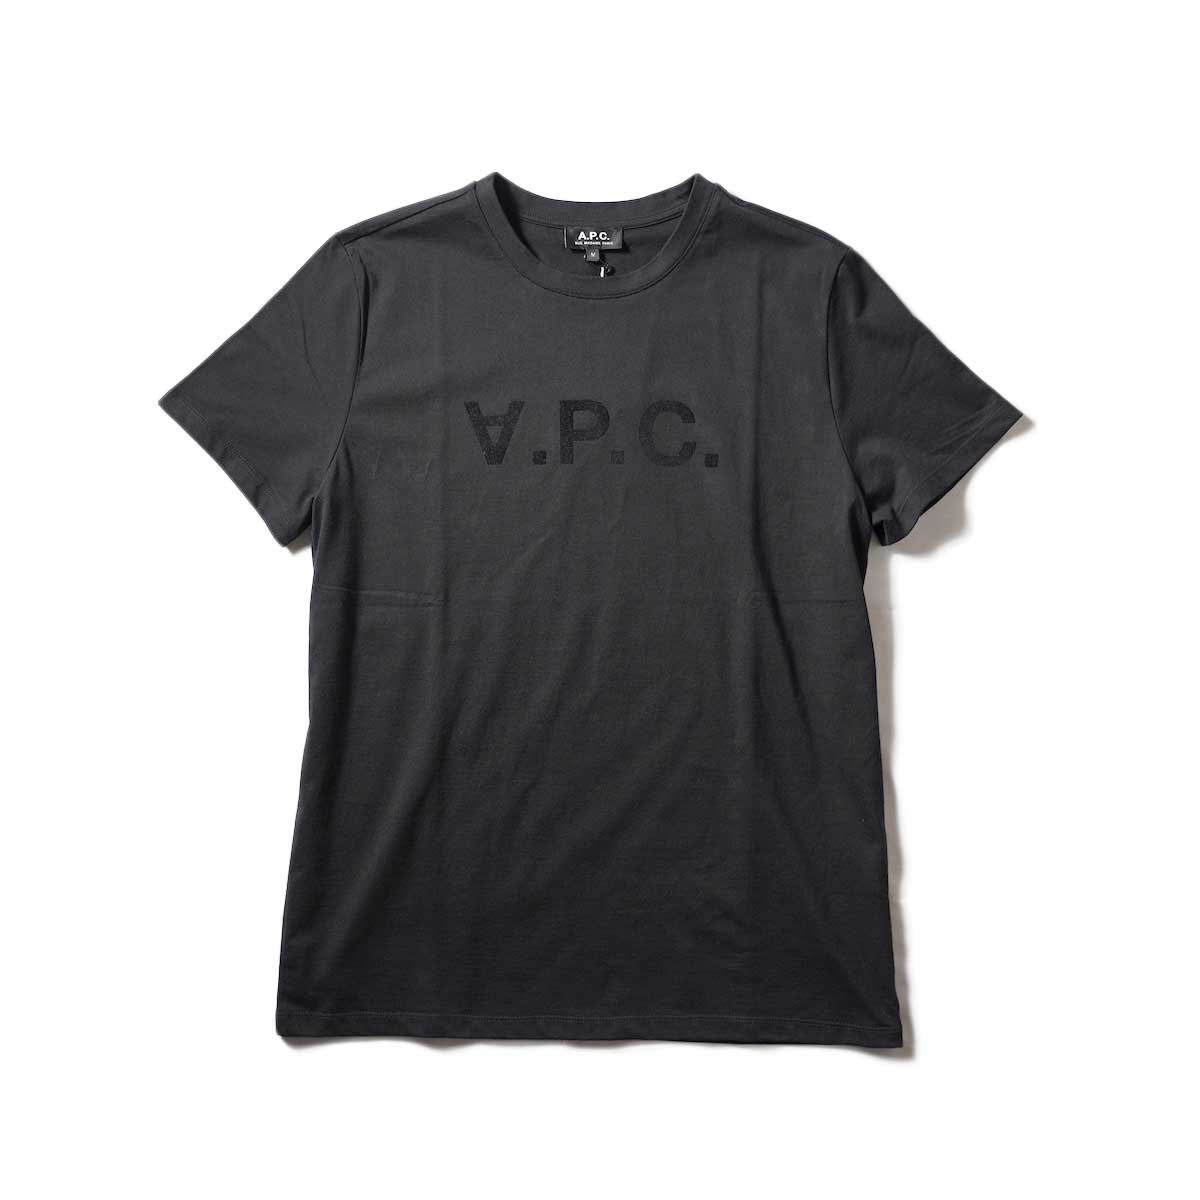 A.P.C. / VPC カラーTシャツ (Black)